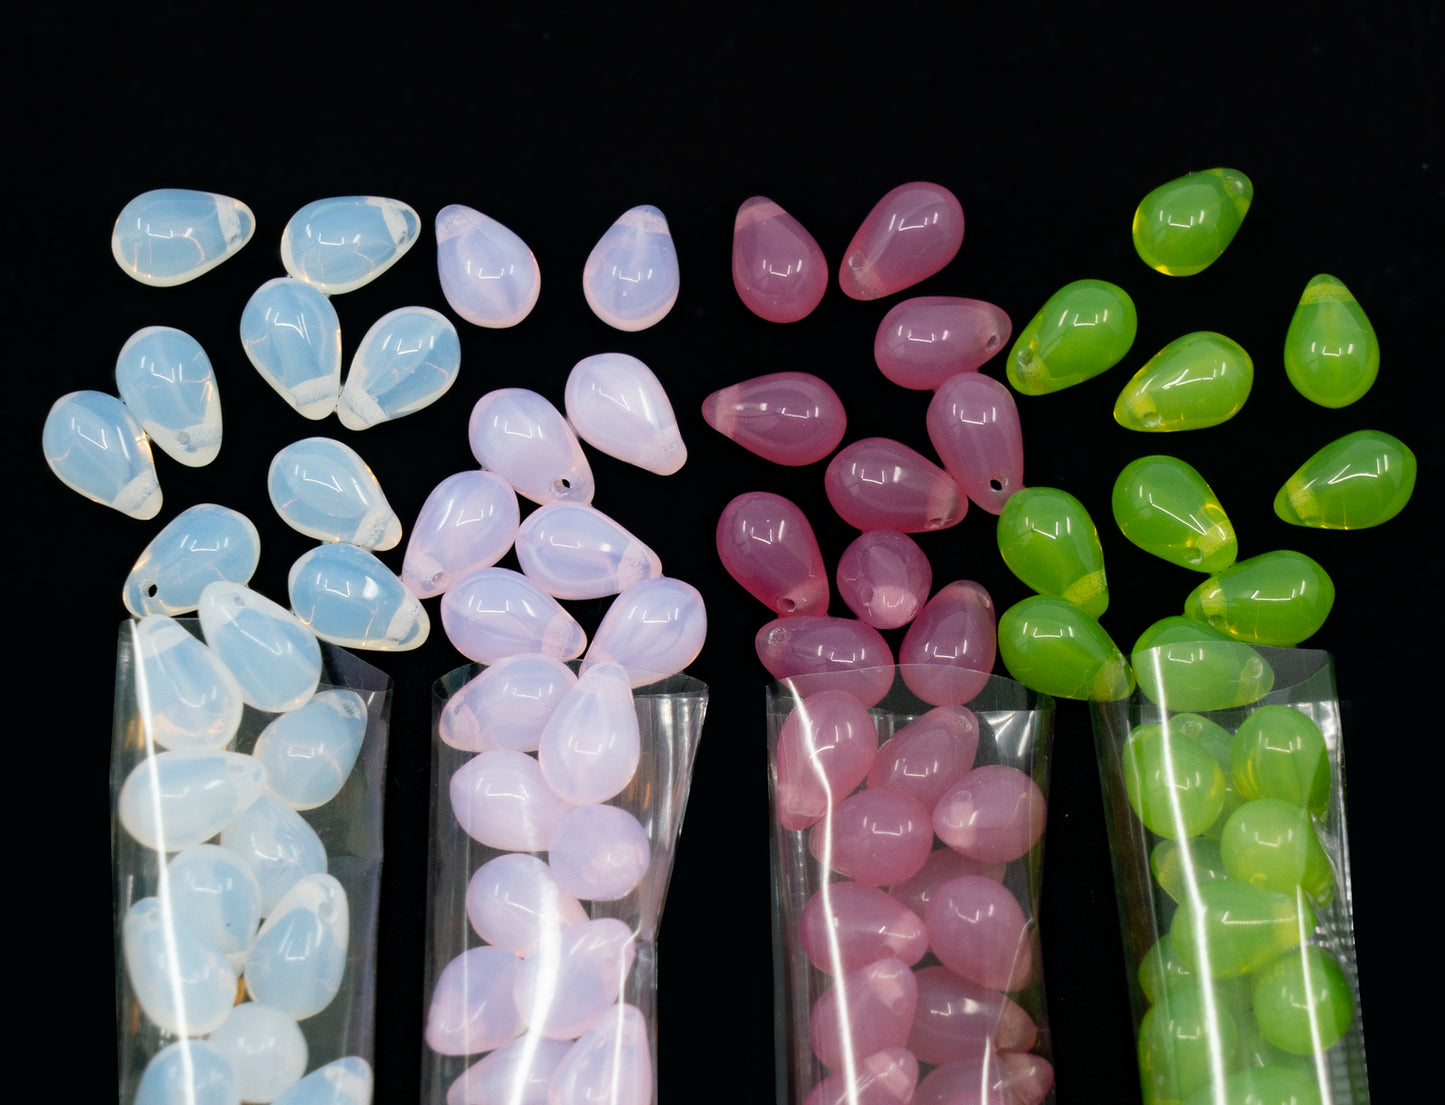 120 多个 6x9 毫米吊坠珠子套件 - 用于珠宝制作的泪珠玻璃珠套装，有 4 种蛋白石颜色：白色、粉色、深粉色、草绿色